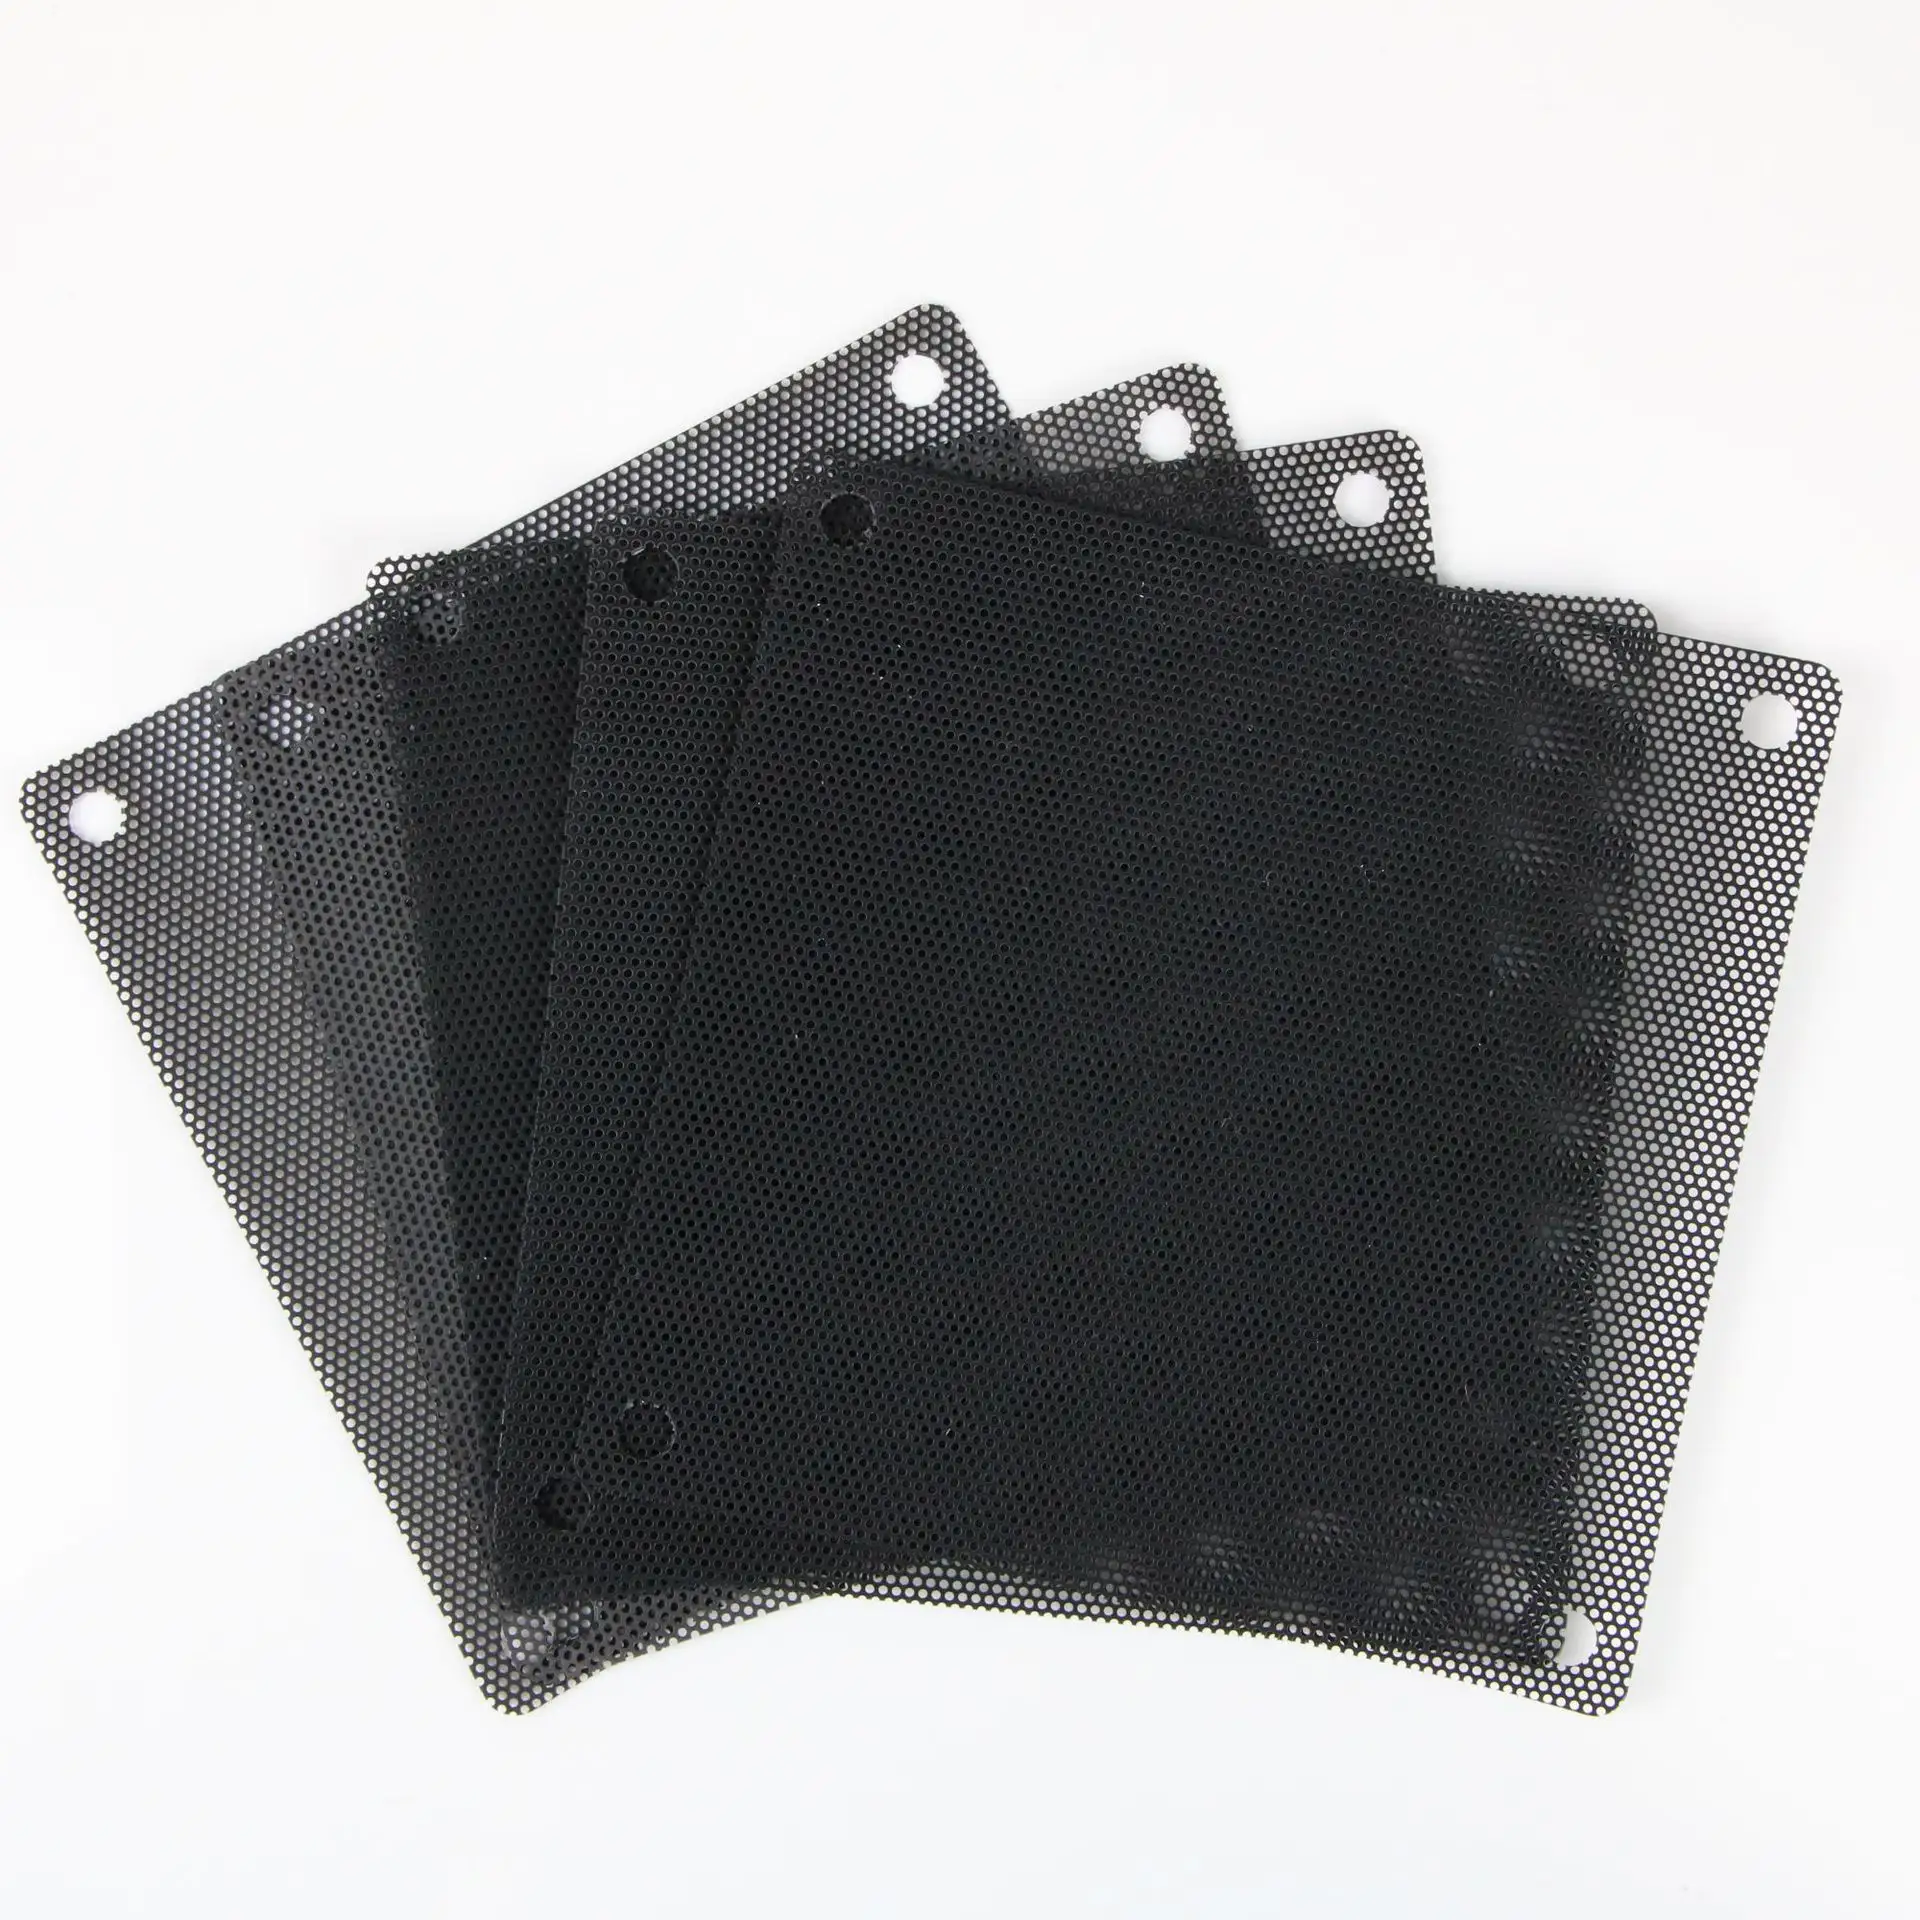 120x120mm PC soğutucu Fan toz filtresi bilgisayar fanı filtresi PVC siyah toz geçirmez kılıf kapak bilgisayar örgü